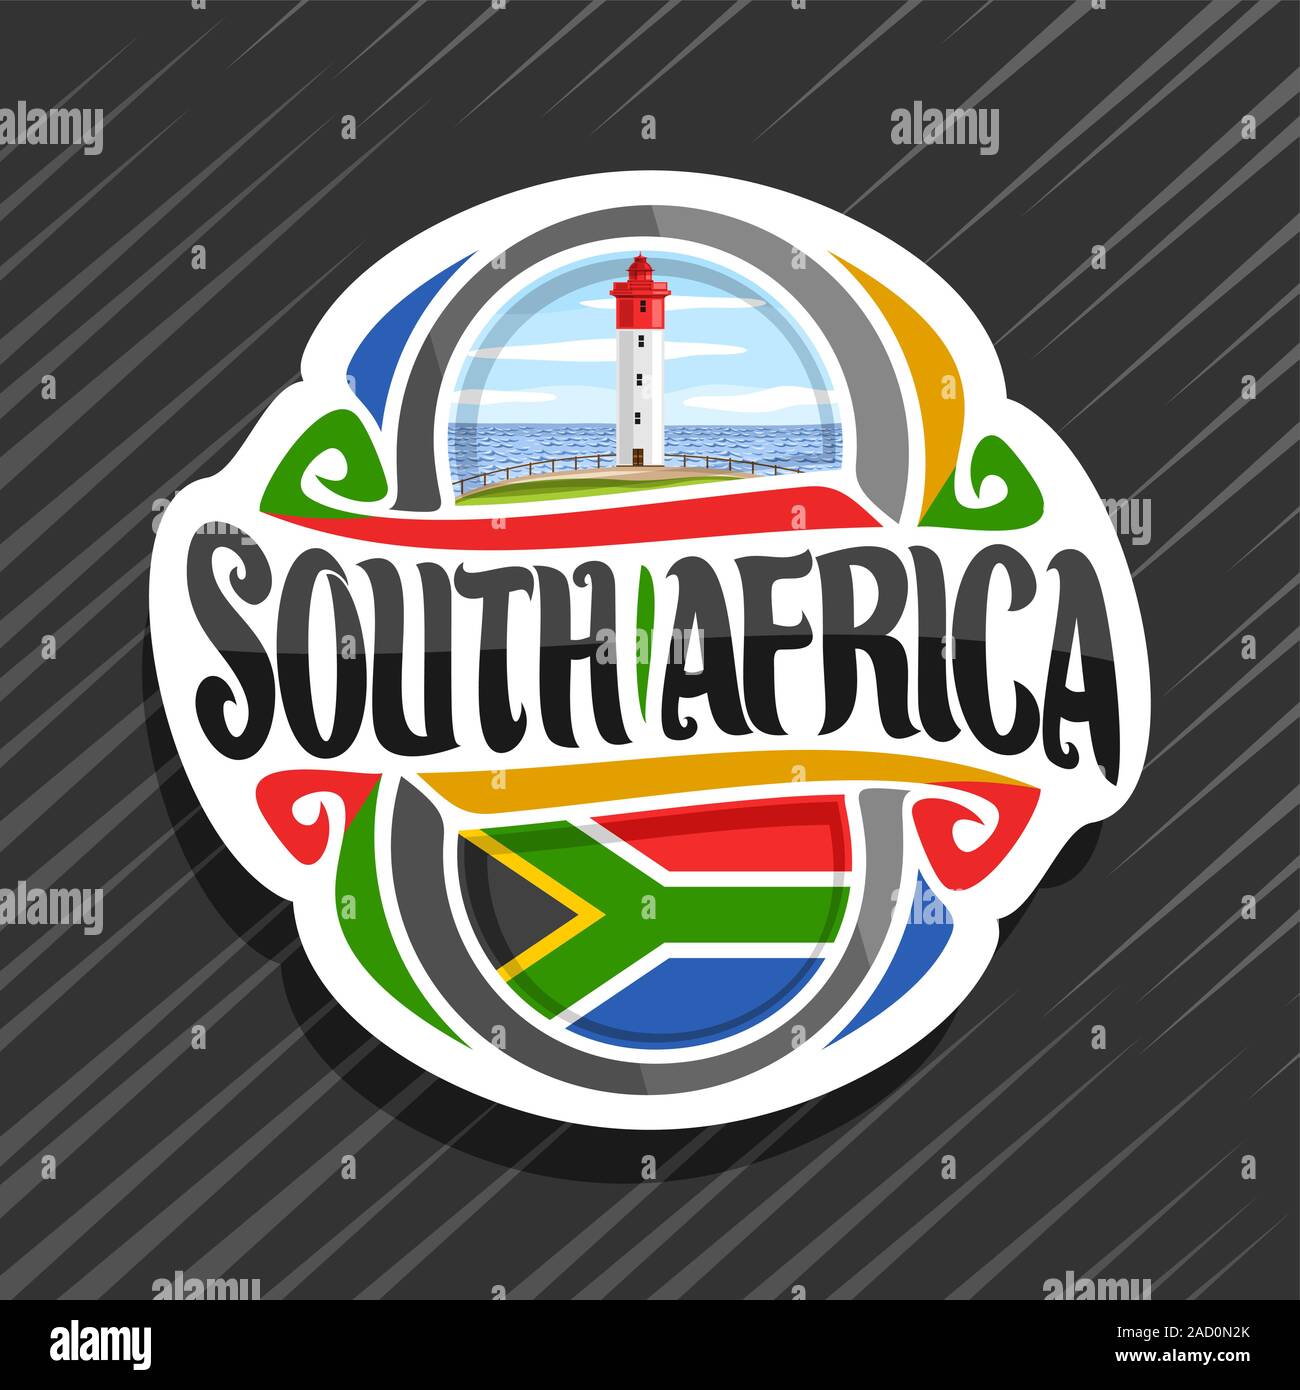 Il logo del vettore per il Sud Africa paese, frigo magnete con il Sud Africa bandiera di stato, spazzola originale carattere tipografico per parole del sud africa e simbolo nazionale Illustrazione Vettoriale